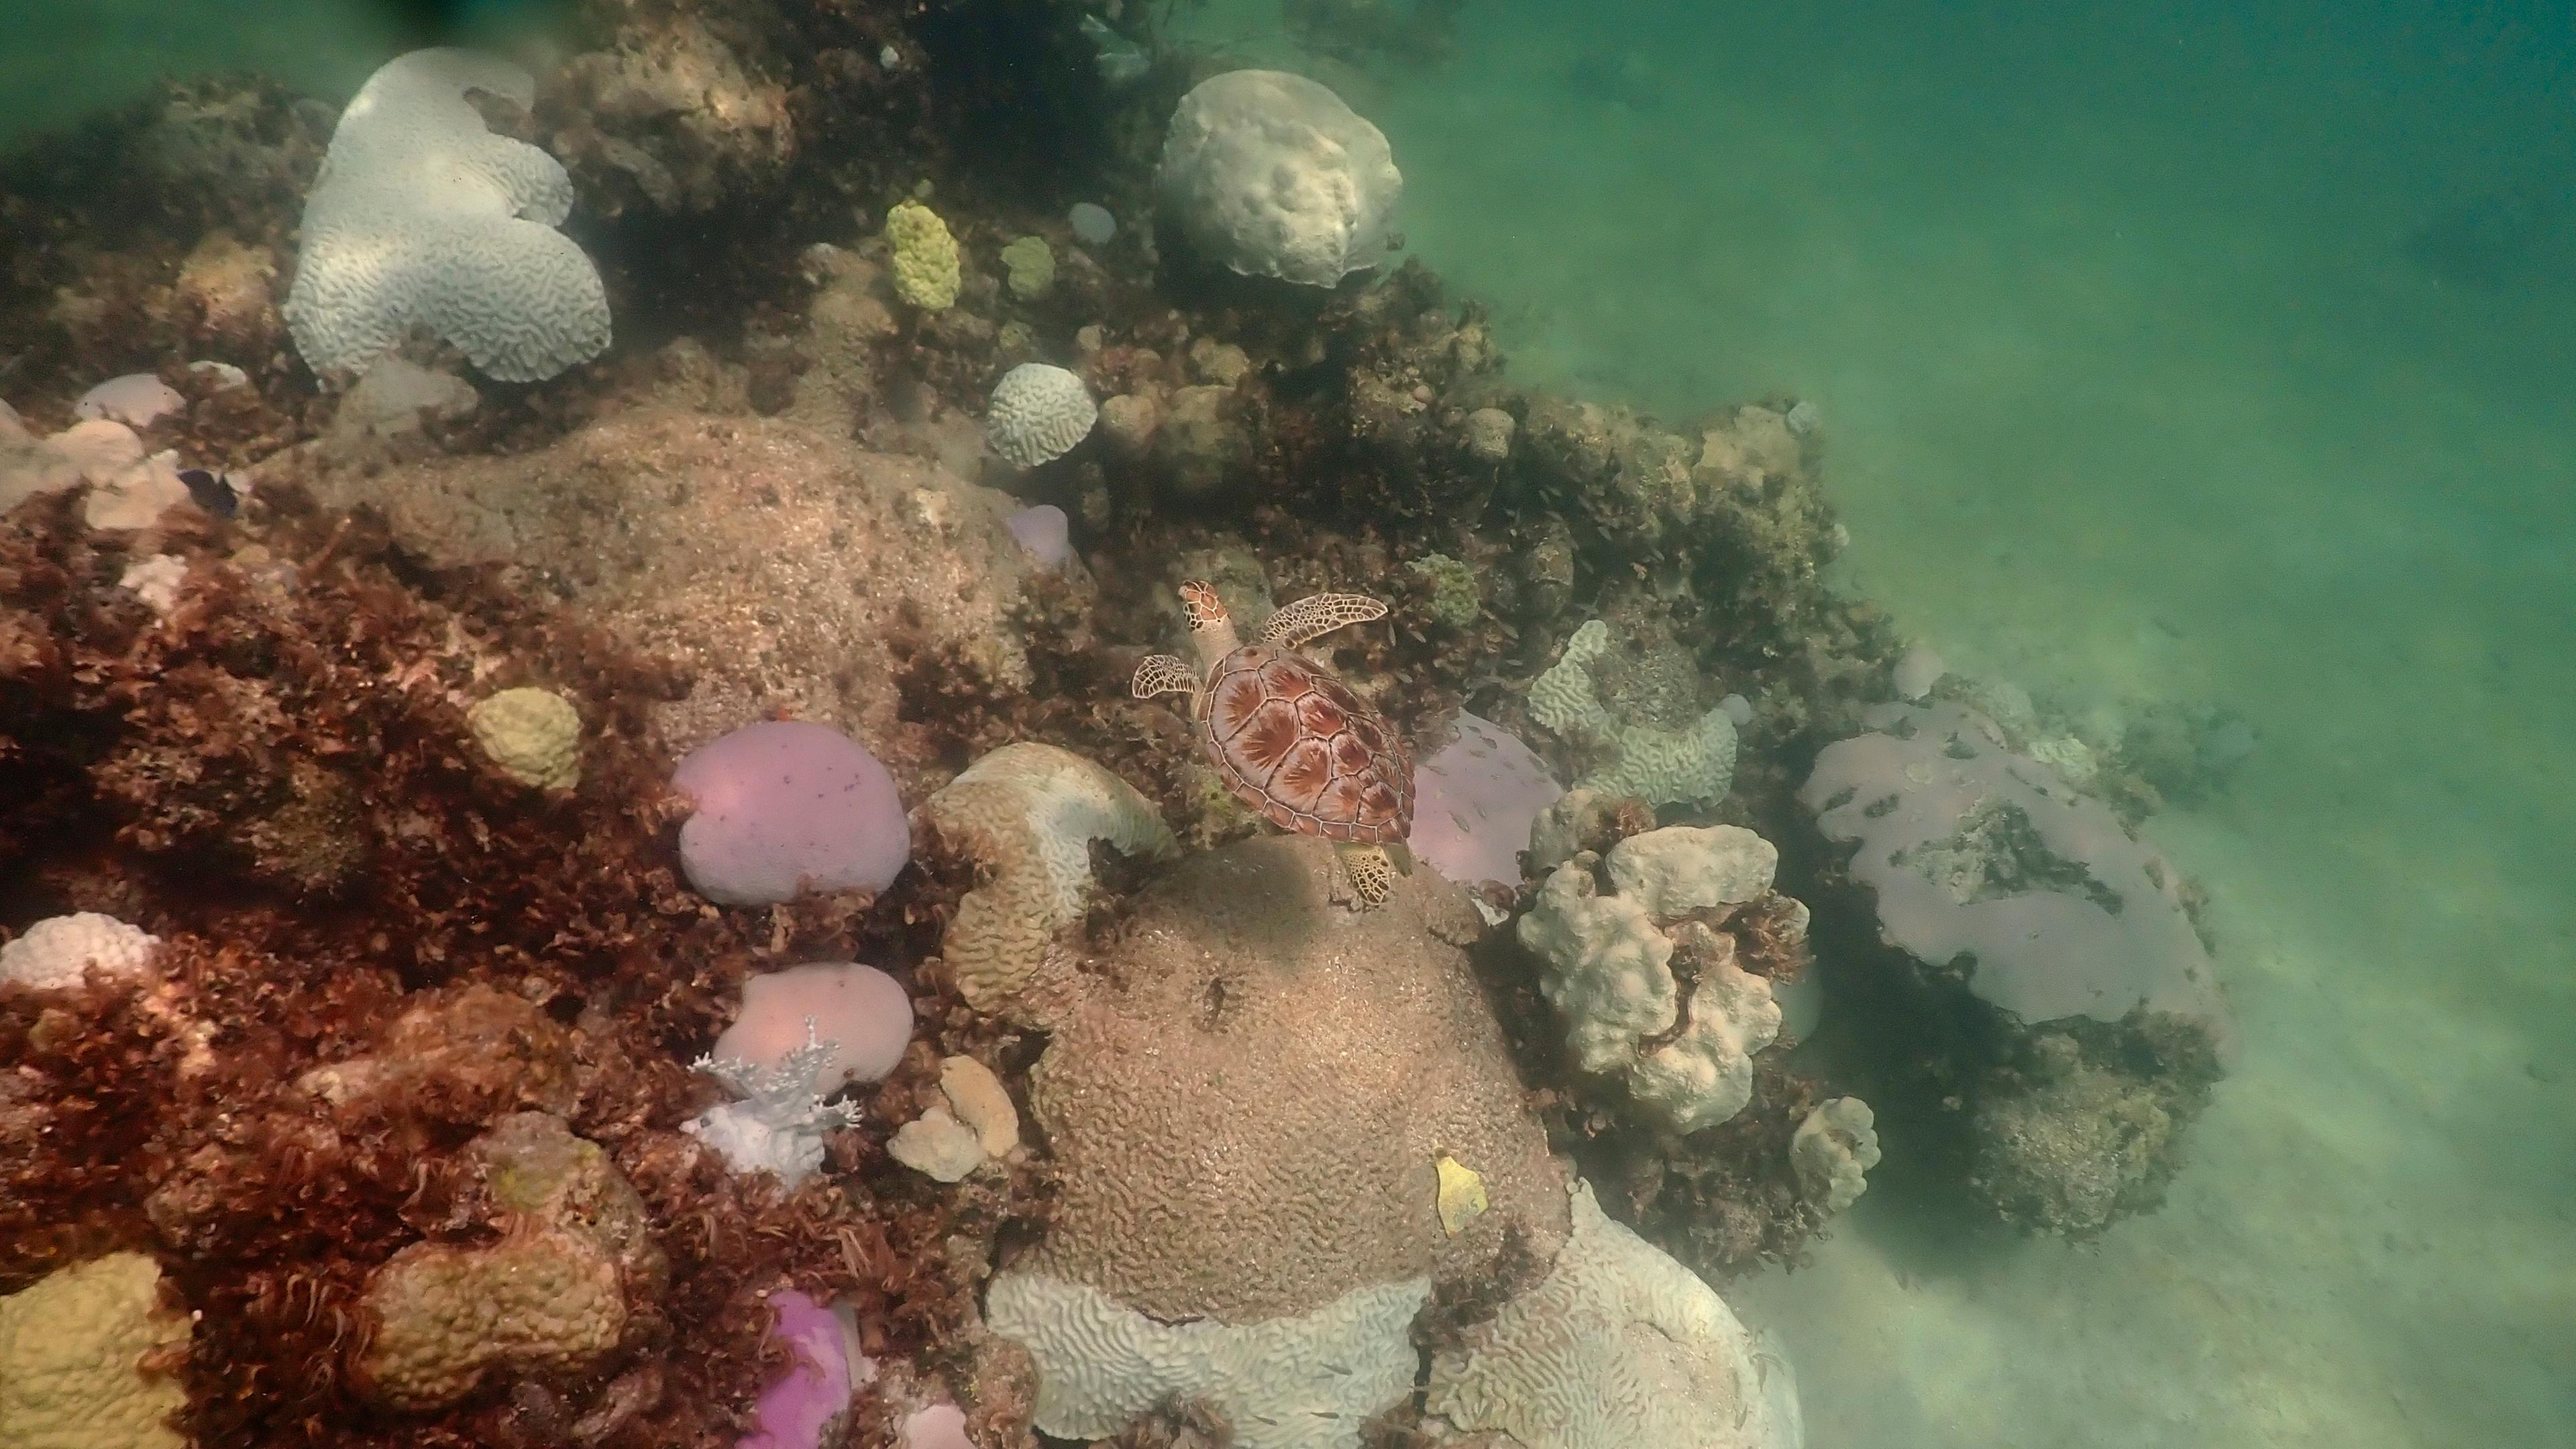 Korallen in verschiedenen Farben sind auf dem Meeresboden zu sehen. Einige sind rot, andere pink oder weiß. Das zeigt die Bleiche durch die hohen Temperaturen.